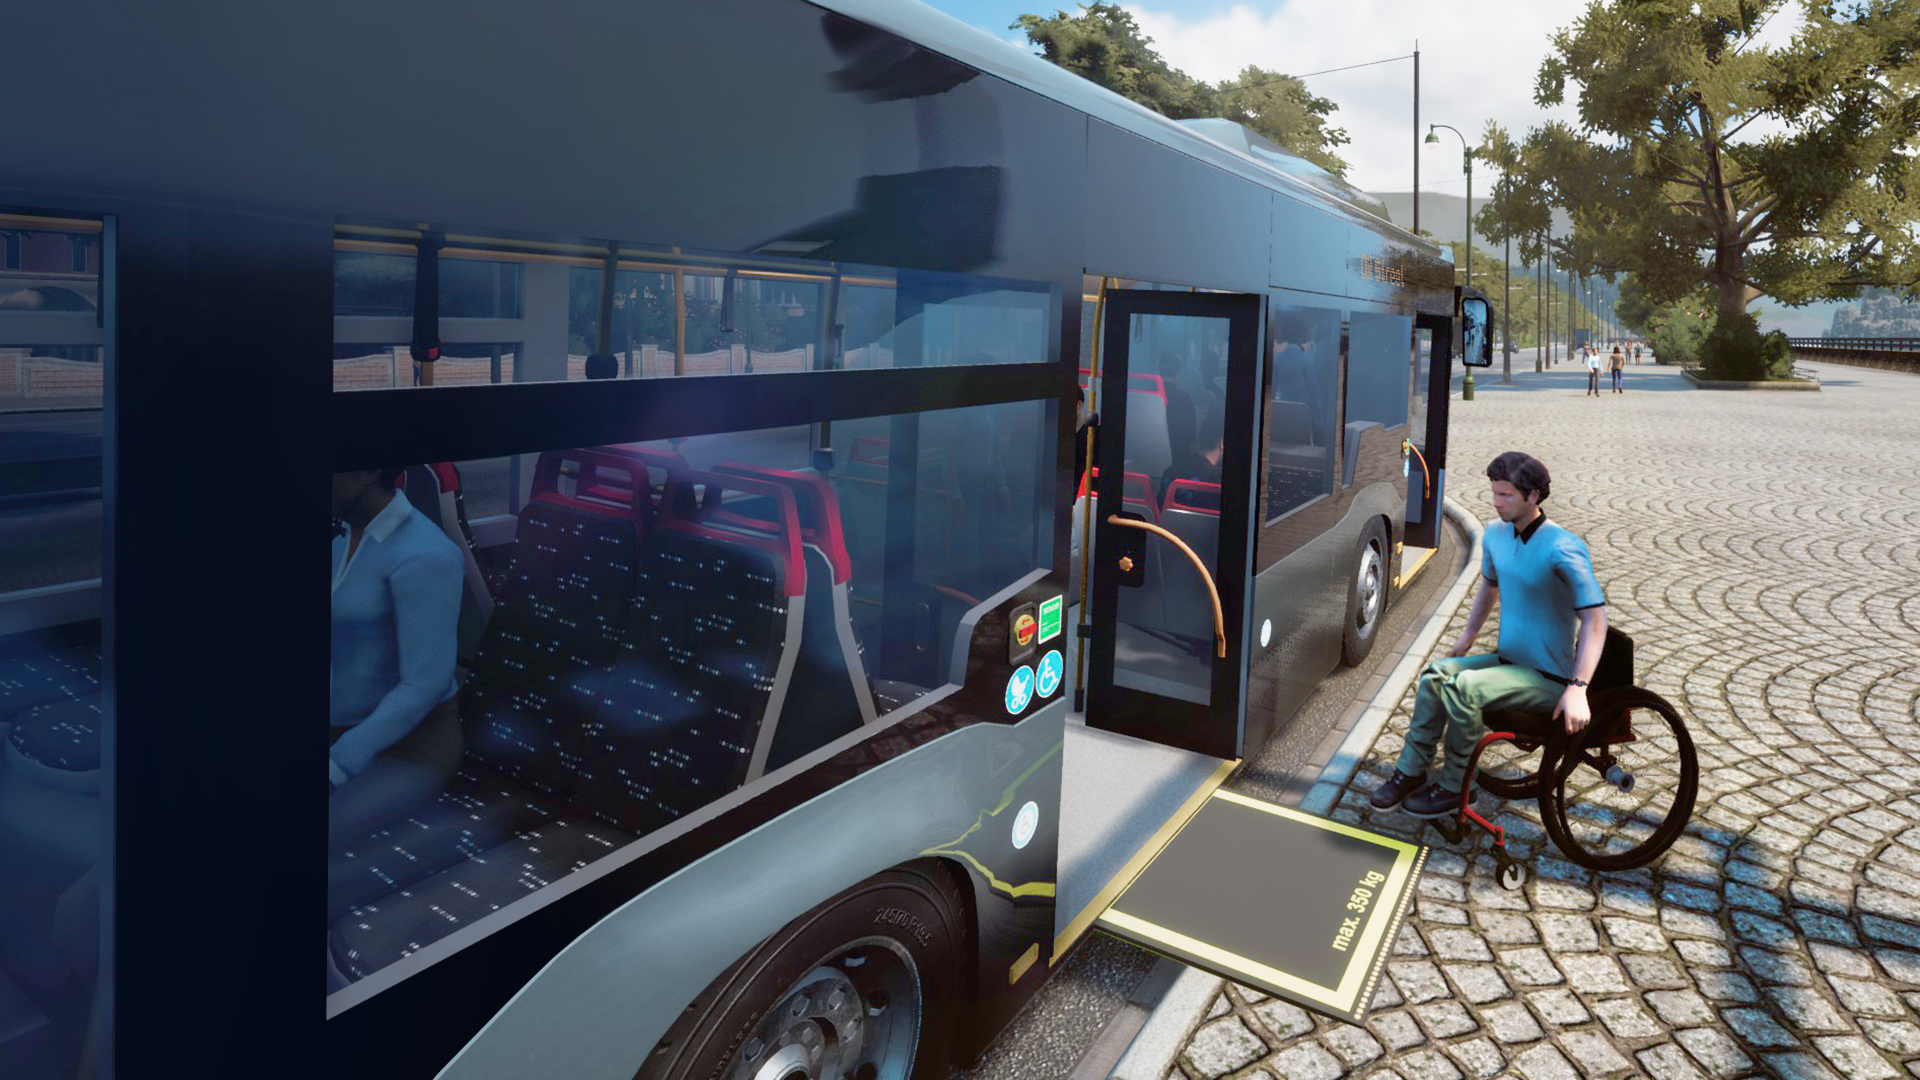 55+ Cara Modif Mobil Bus Simulator Terbaik